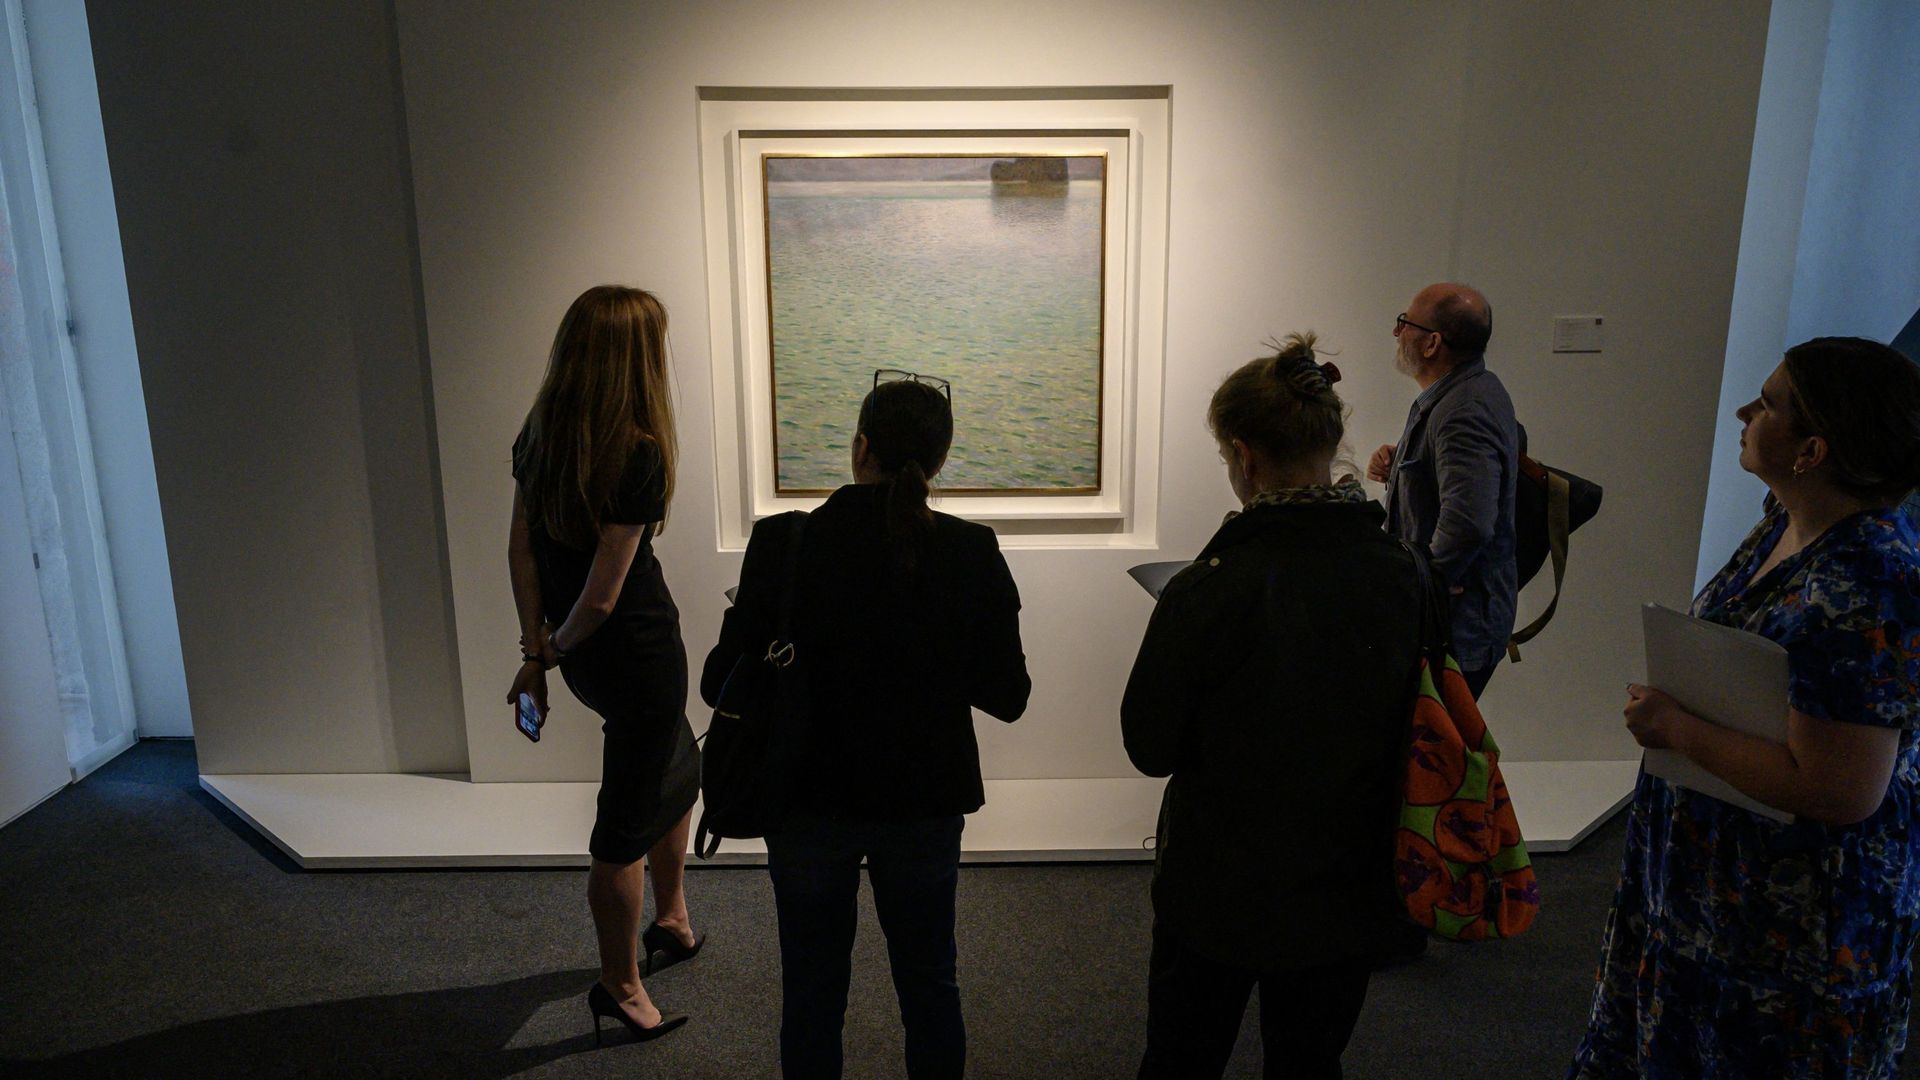 Le tableau "Insel im Attersee" ("L’île sur le lac Attersee") de Gustave Klimt a été vendu 53,2 millions de dollars.